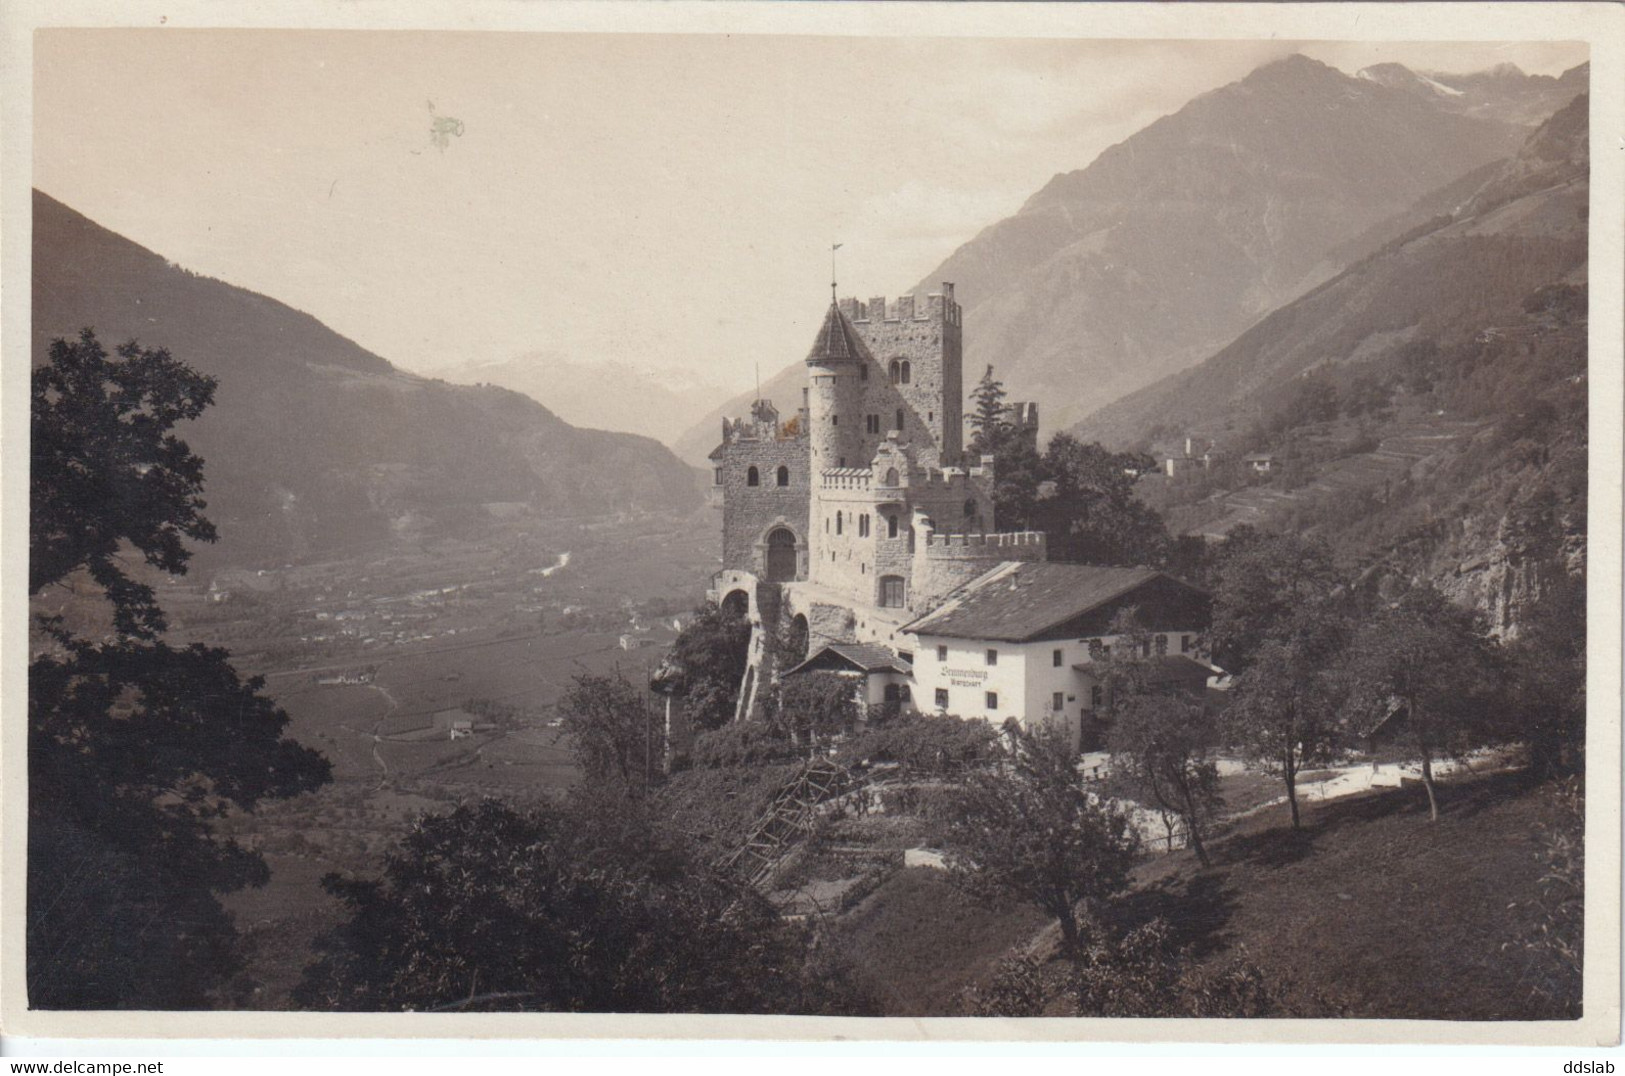 Merano (Bolzano) - Castello Fontana - Ed. Leo Baehrendt - 1927 - Merano